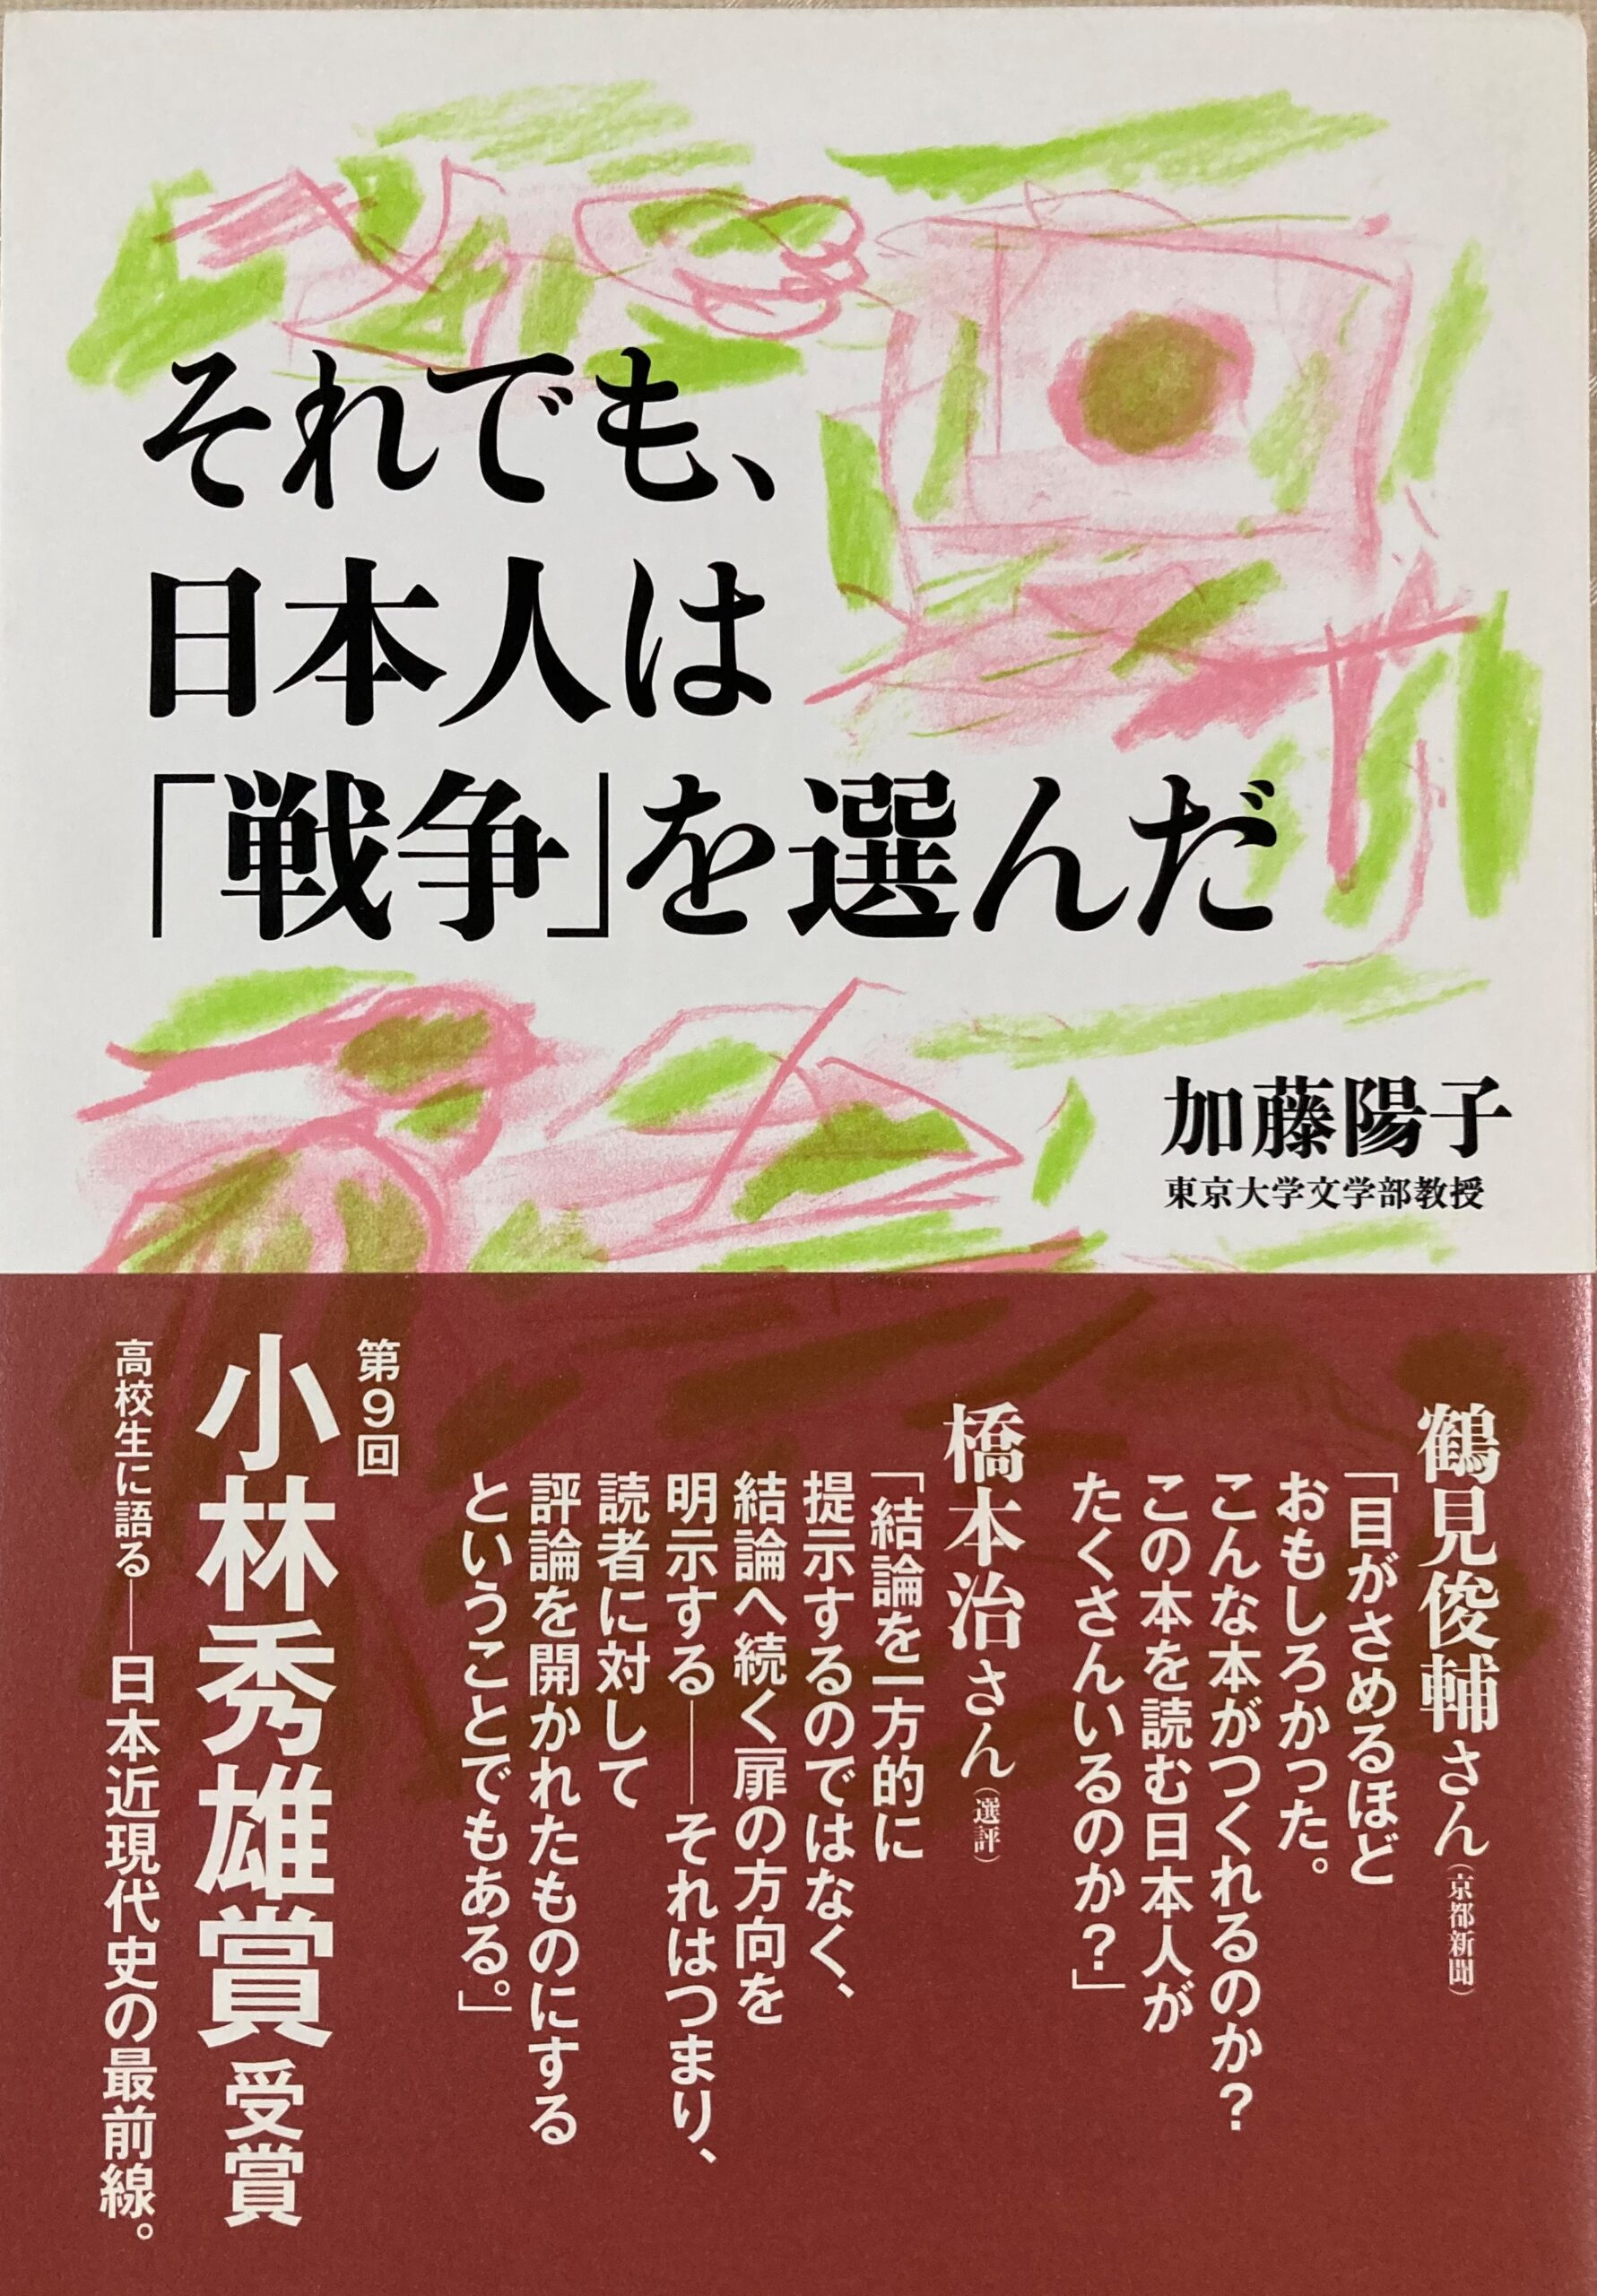 帯に推薦文がたくさん書かれた加藤陽子の「それでも、日本人は戦争を選んだ」のソフトカバーの単行本の表紙の写真。